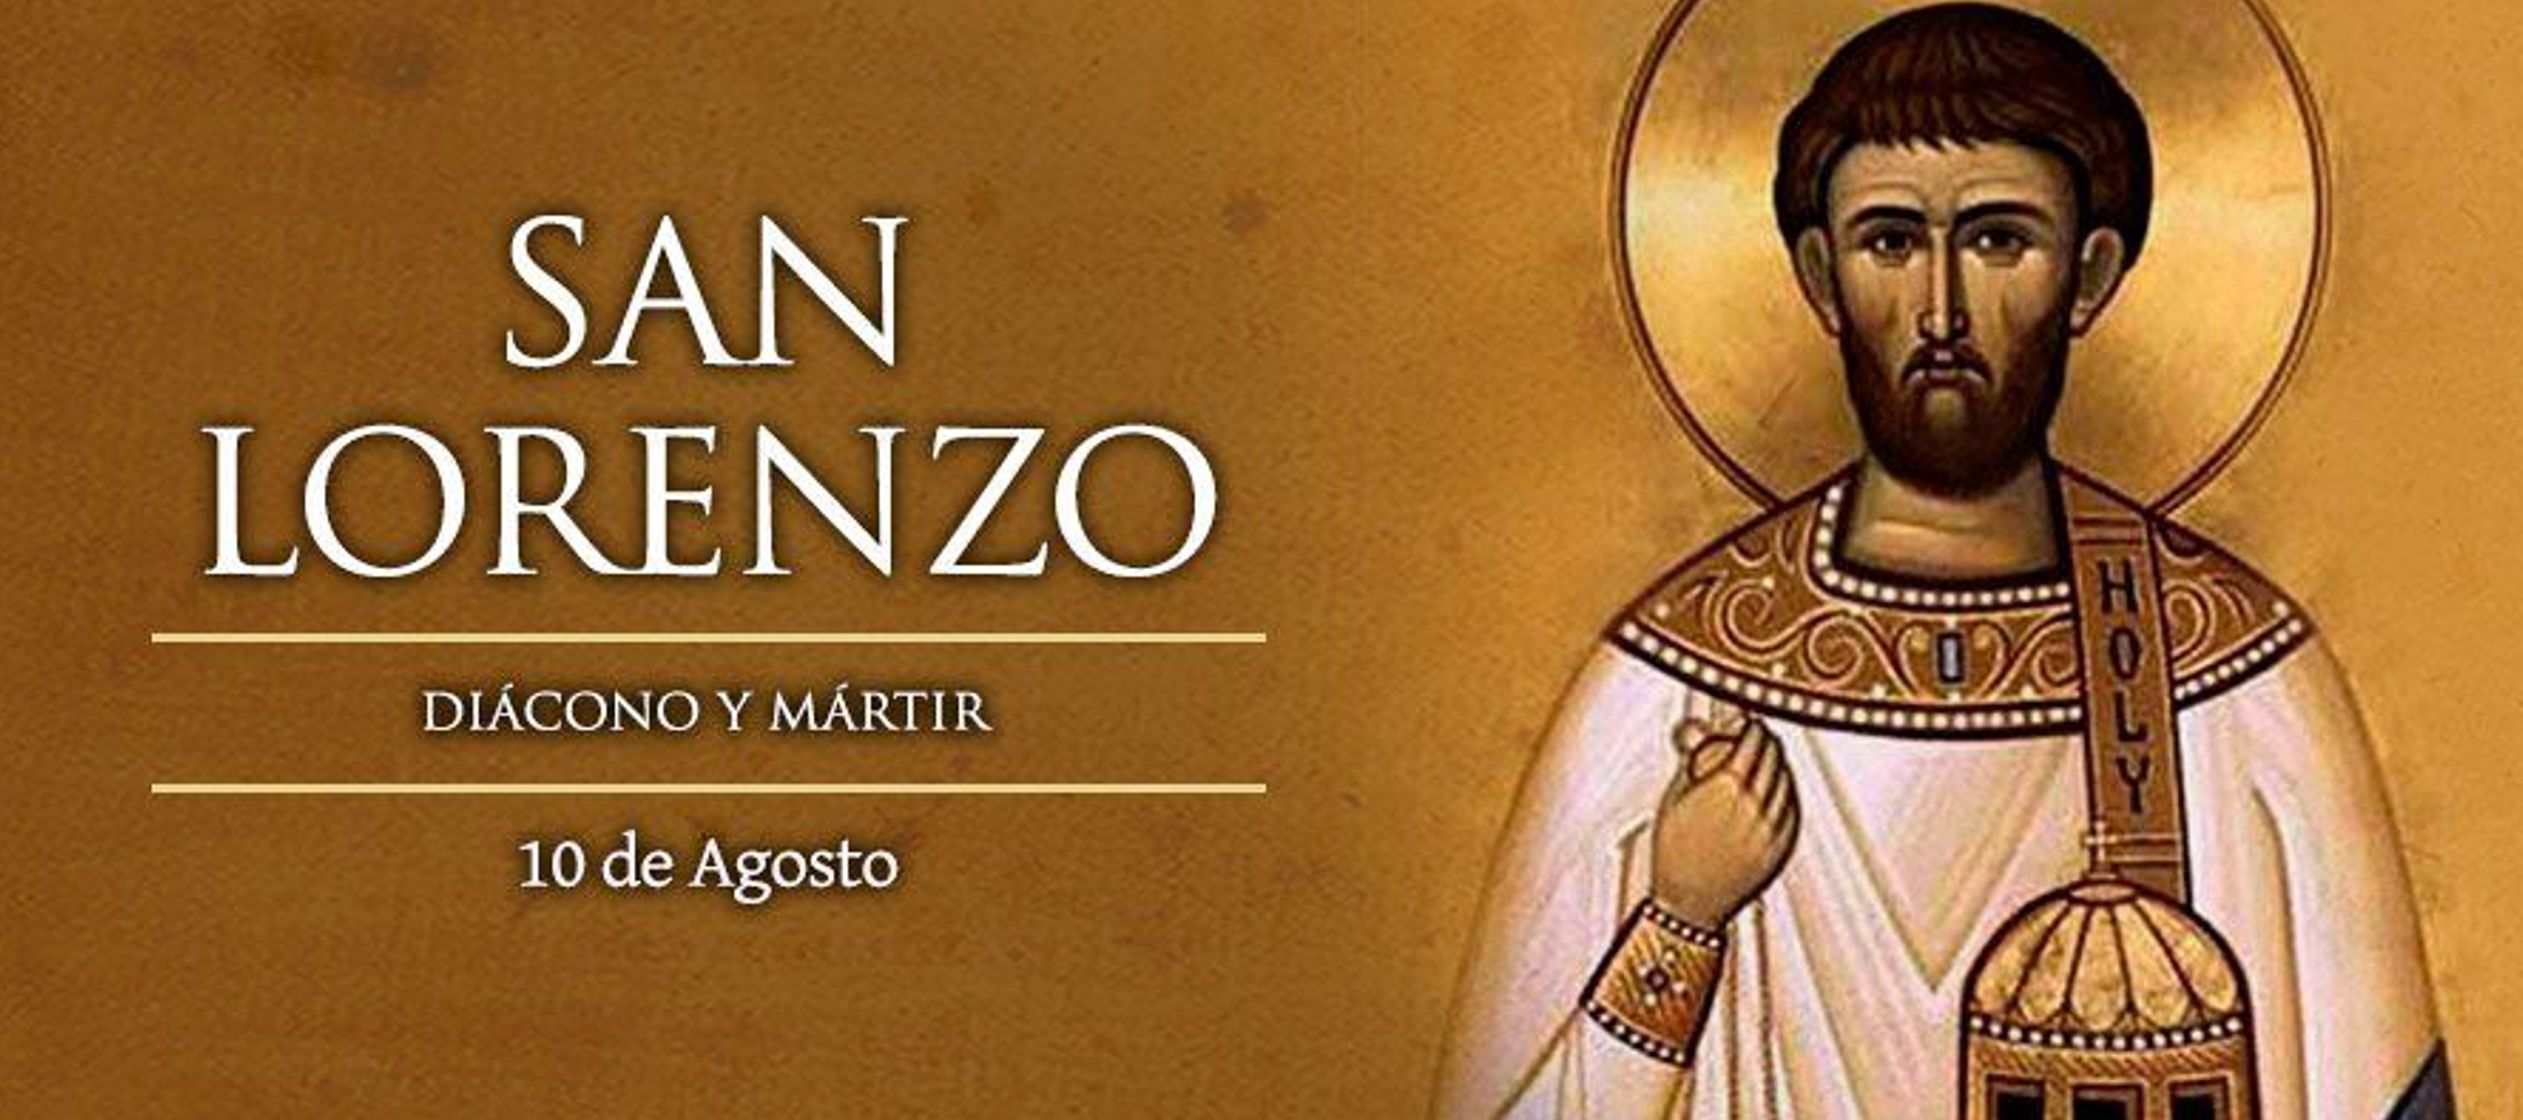 Desde el siglo IV, San Lorenzo ha sido uno de los mártires más venerados de la...